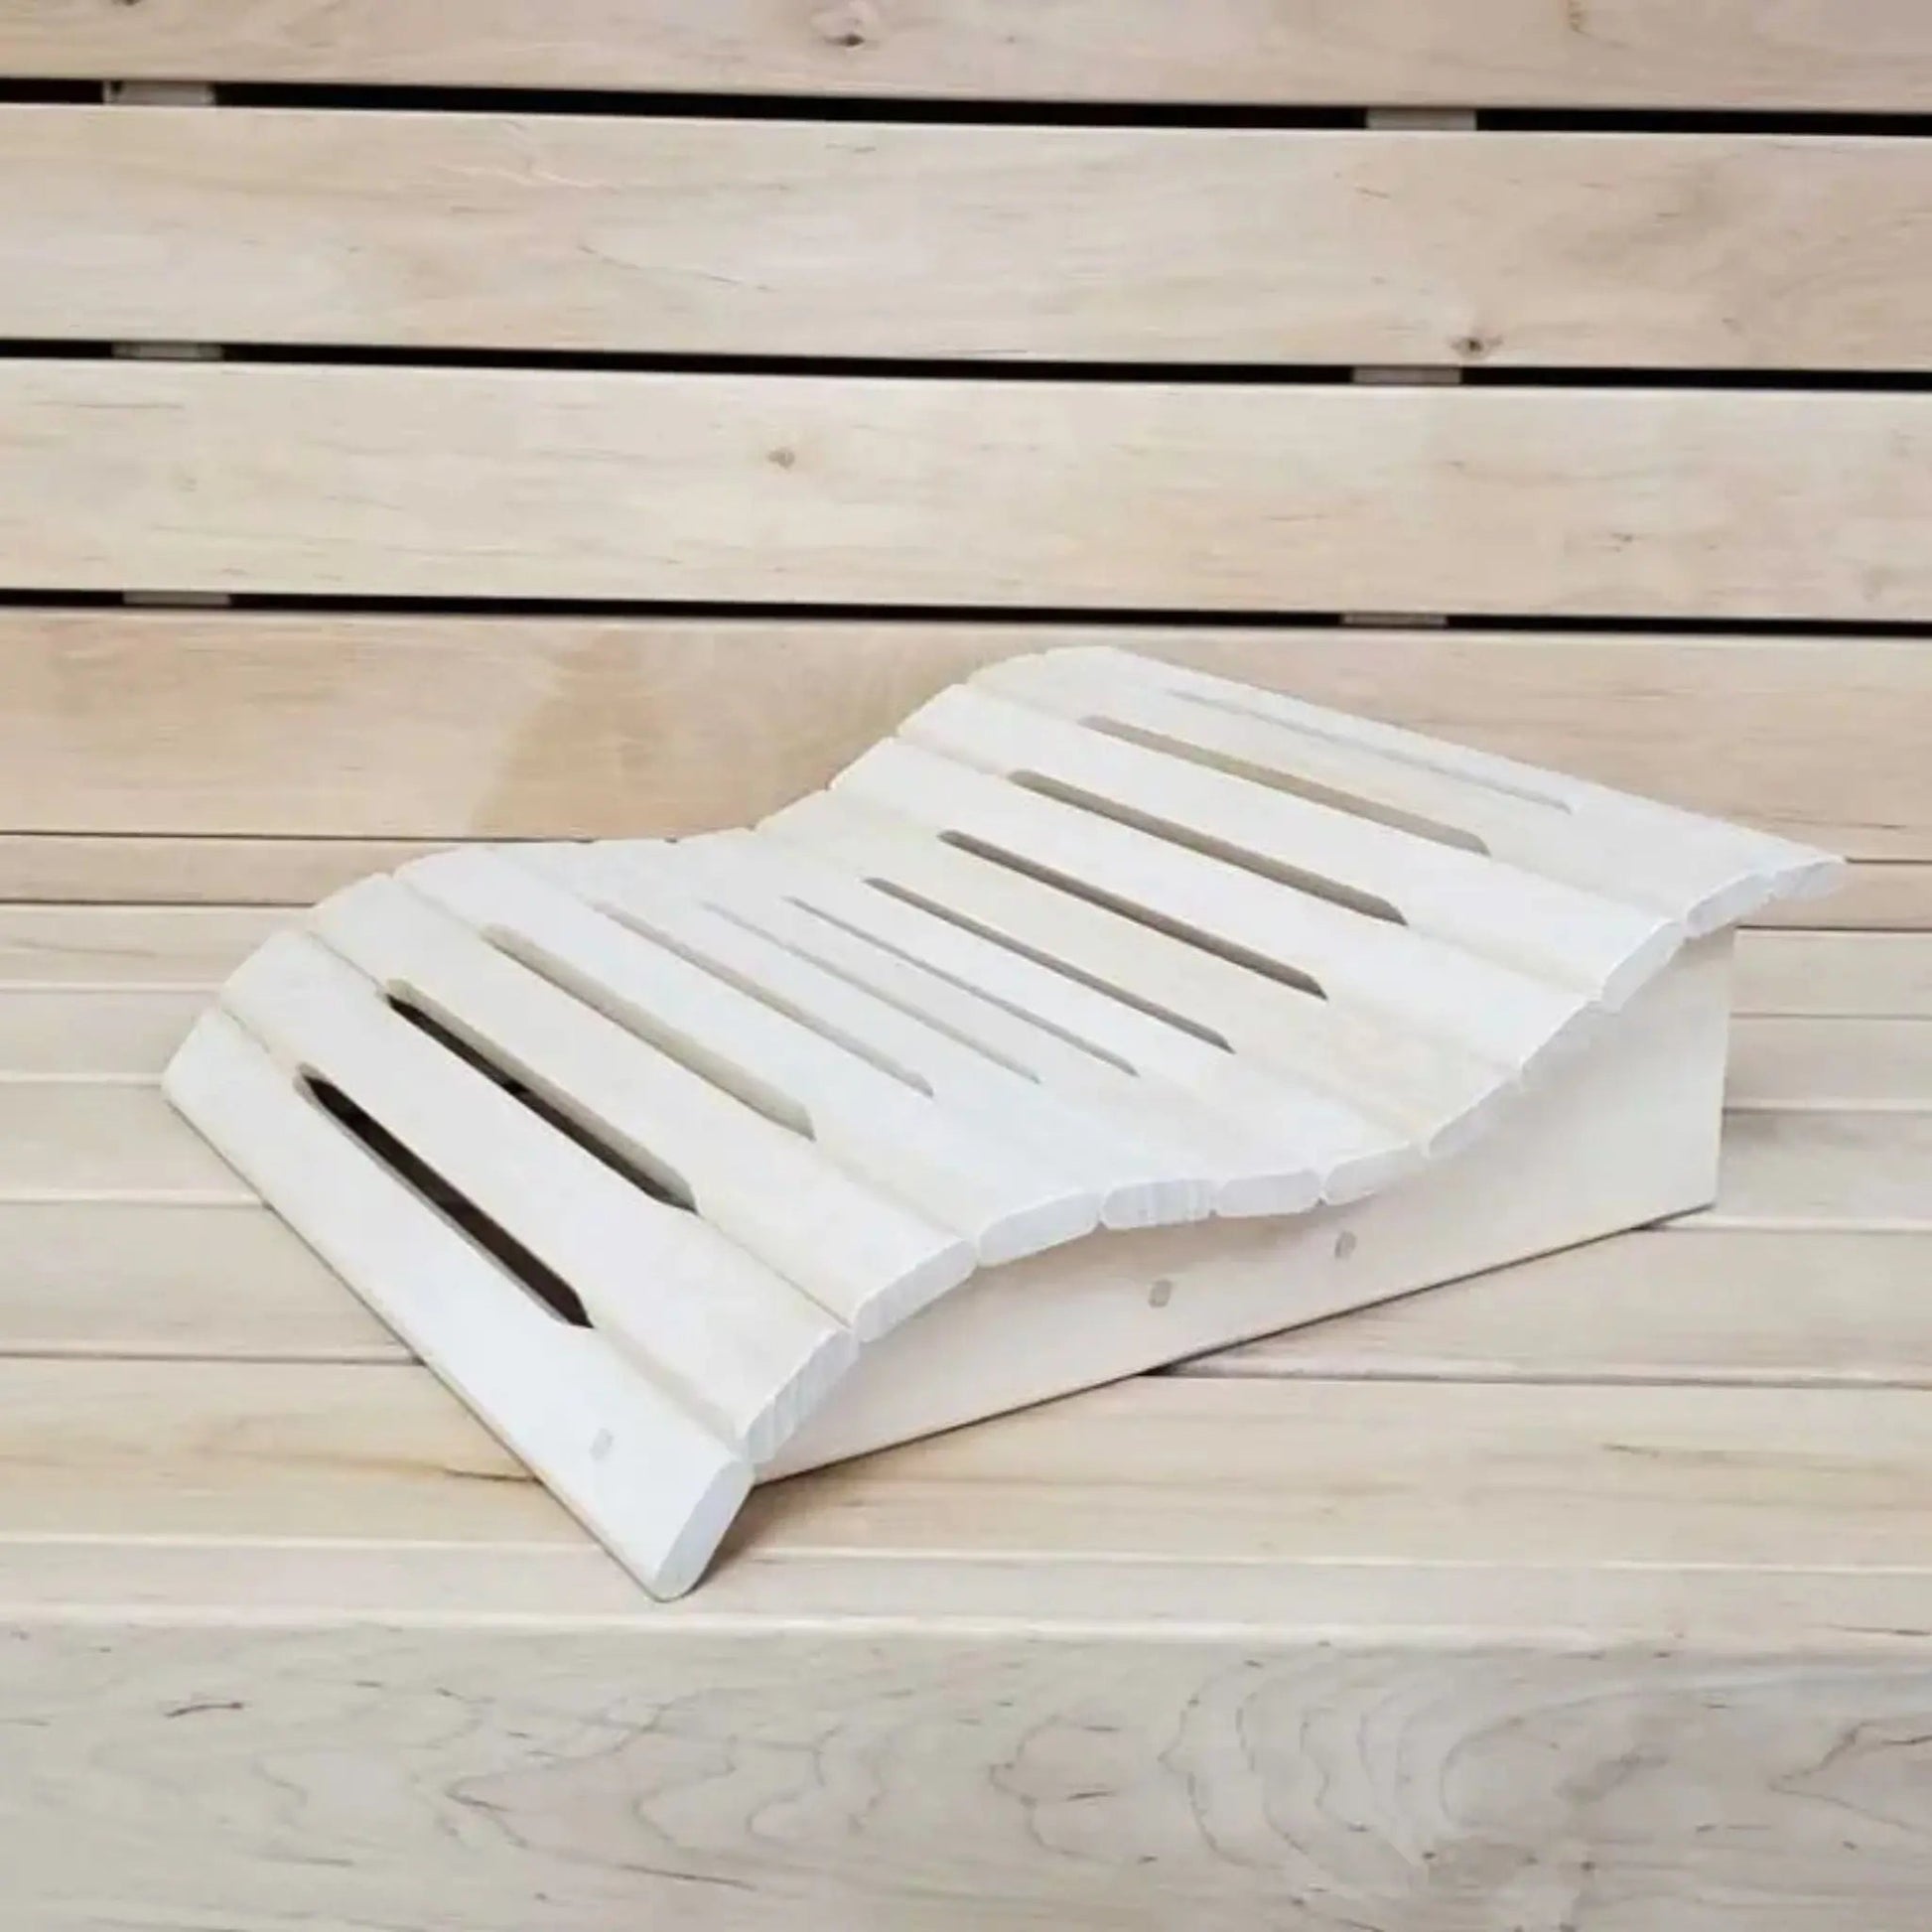 Sturdy "Wave" Sauna Headrest / Footrest in Linden Wood Headrest | Finnmark Sauna